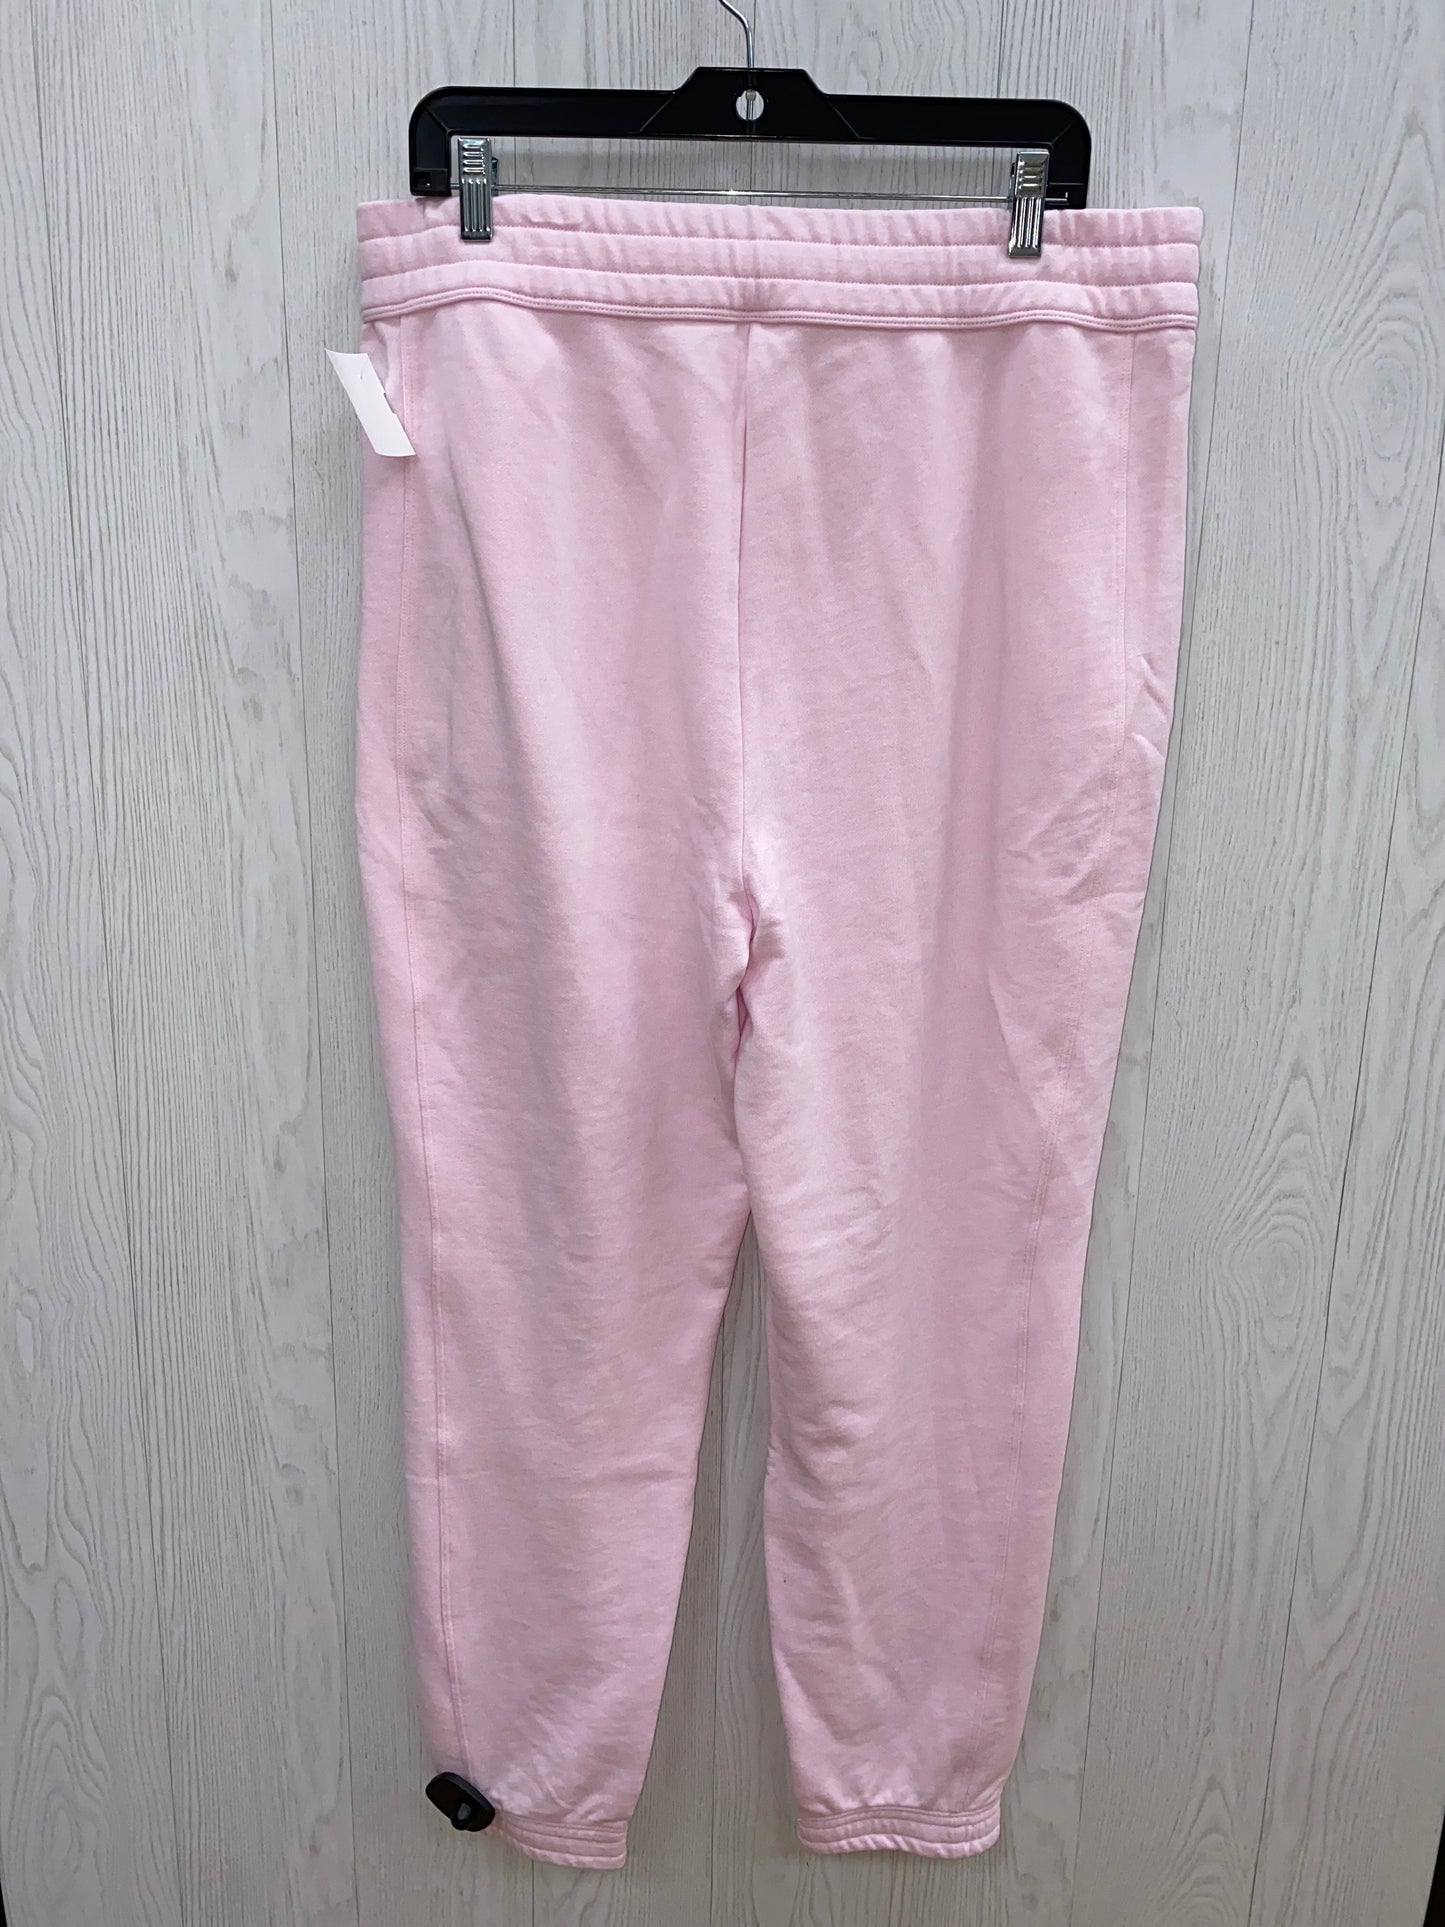 Pants Sweatpants By Fabletics  Size: Xxl